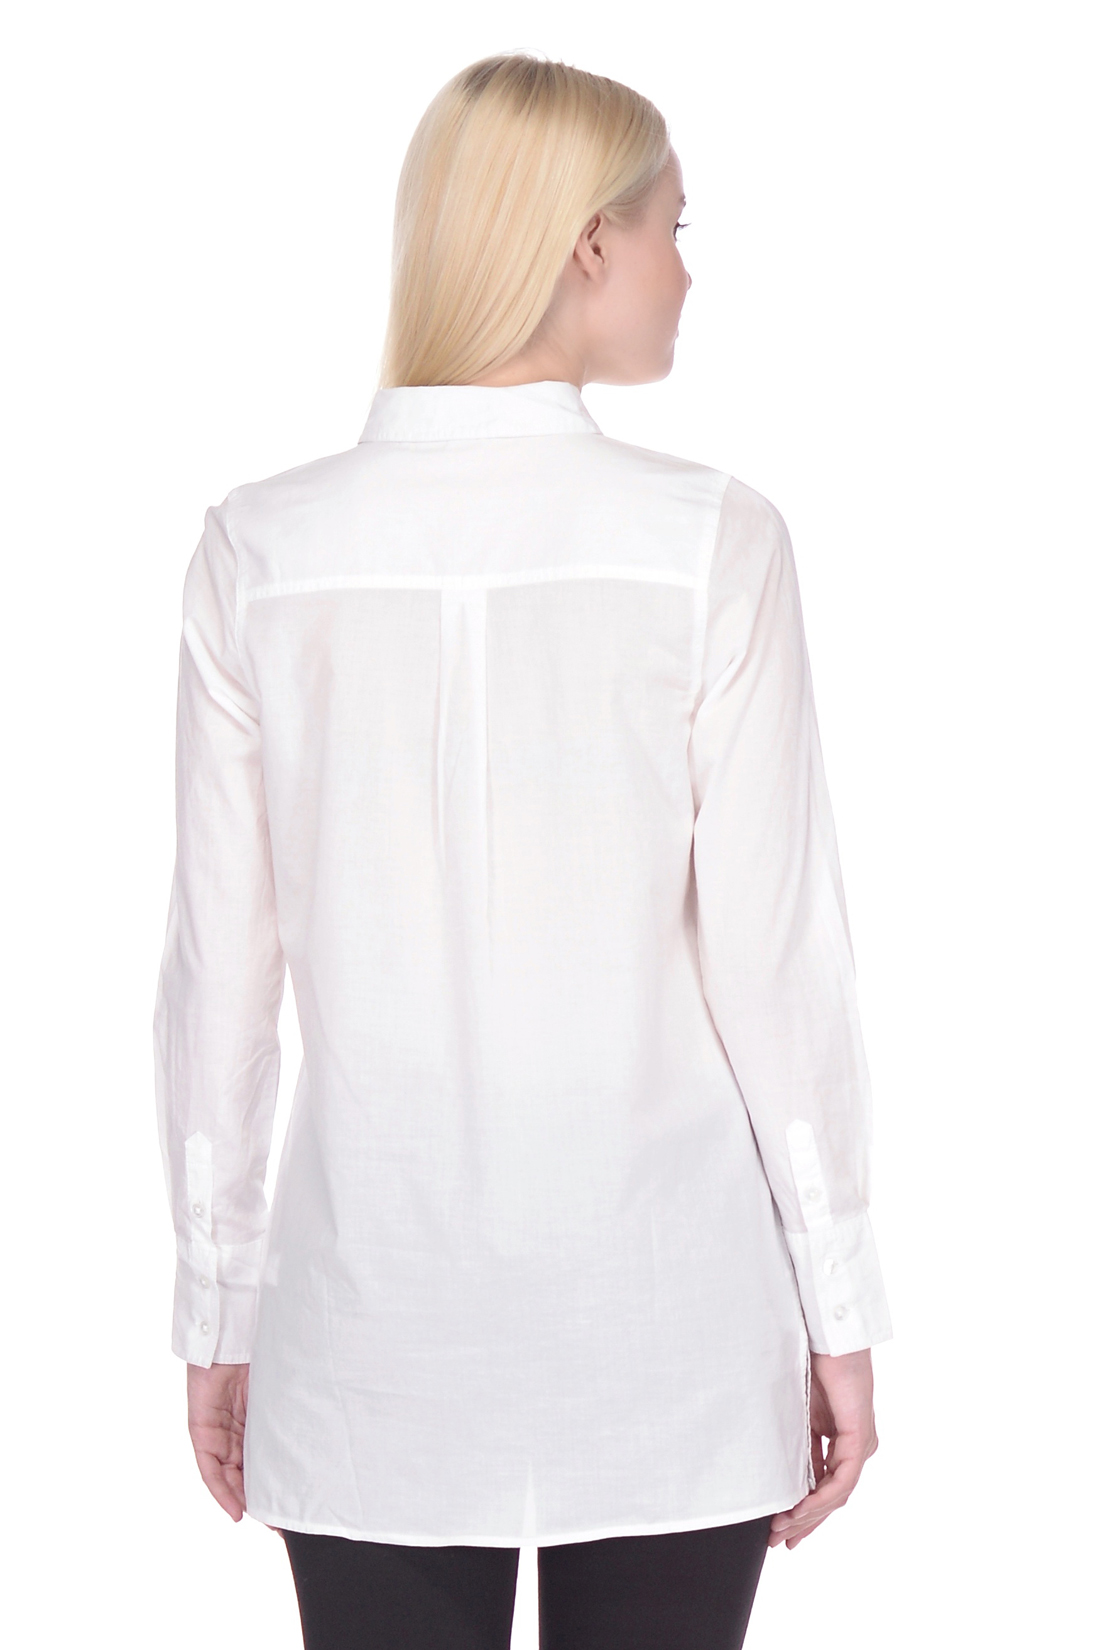 Удлинённая рубашка из хлопка (арт. baon B178055), размер XS, цвет белый Удлинённая рубашка из хлопка (арт. baon B178055) - фото 2